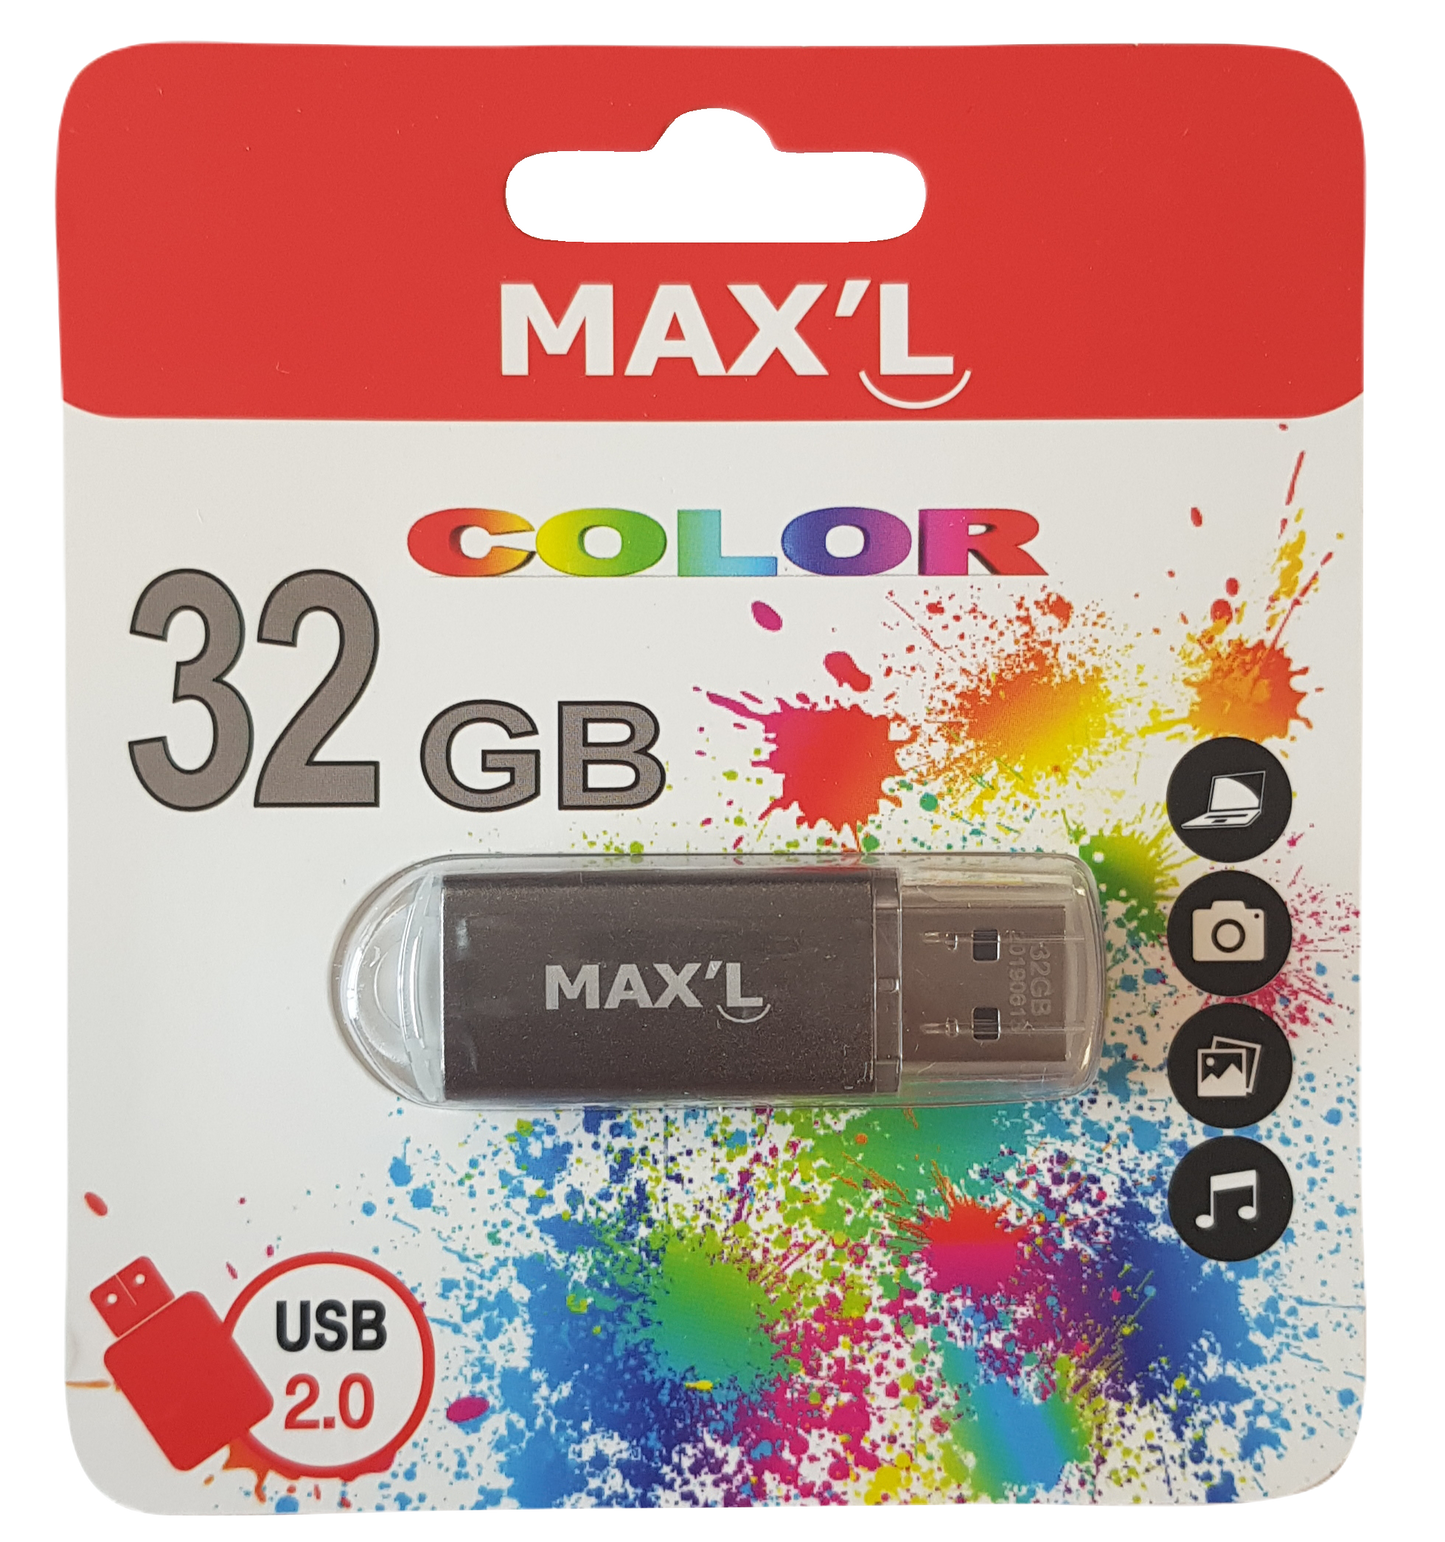 Clé USB 2.0 Color MAX'L